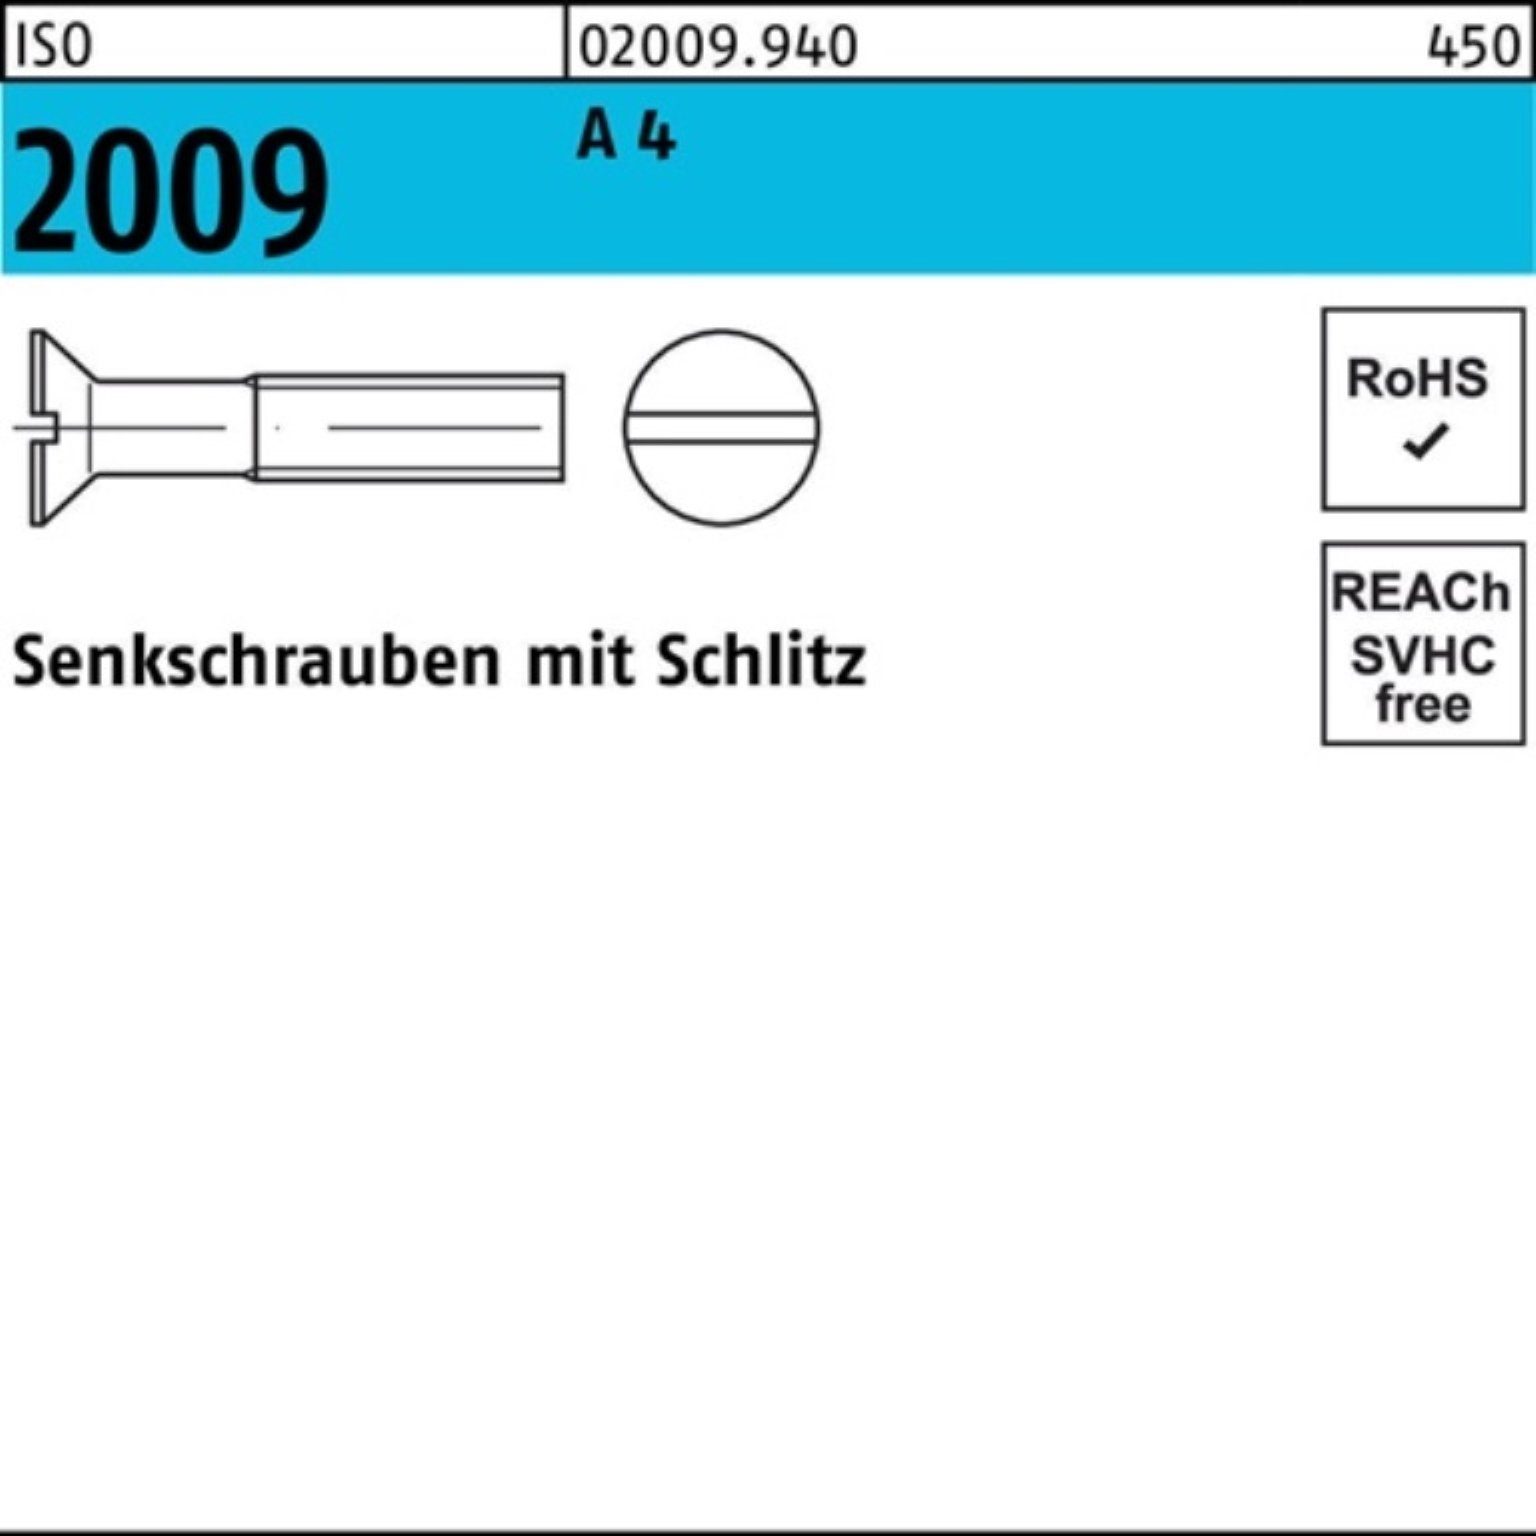 Reyher Senkschraube 100er M10x Schlitz 2009 4 A 50 Stück 30 ISO Pack ISO 200 Senkschraube